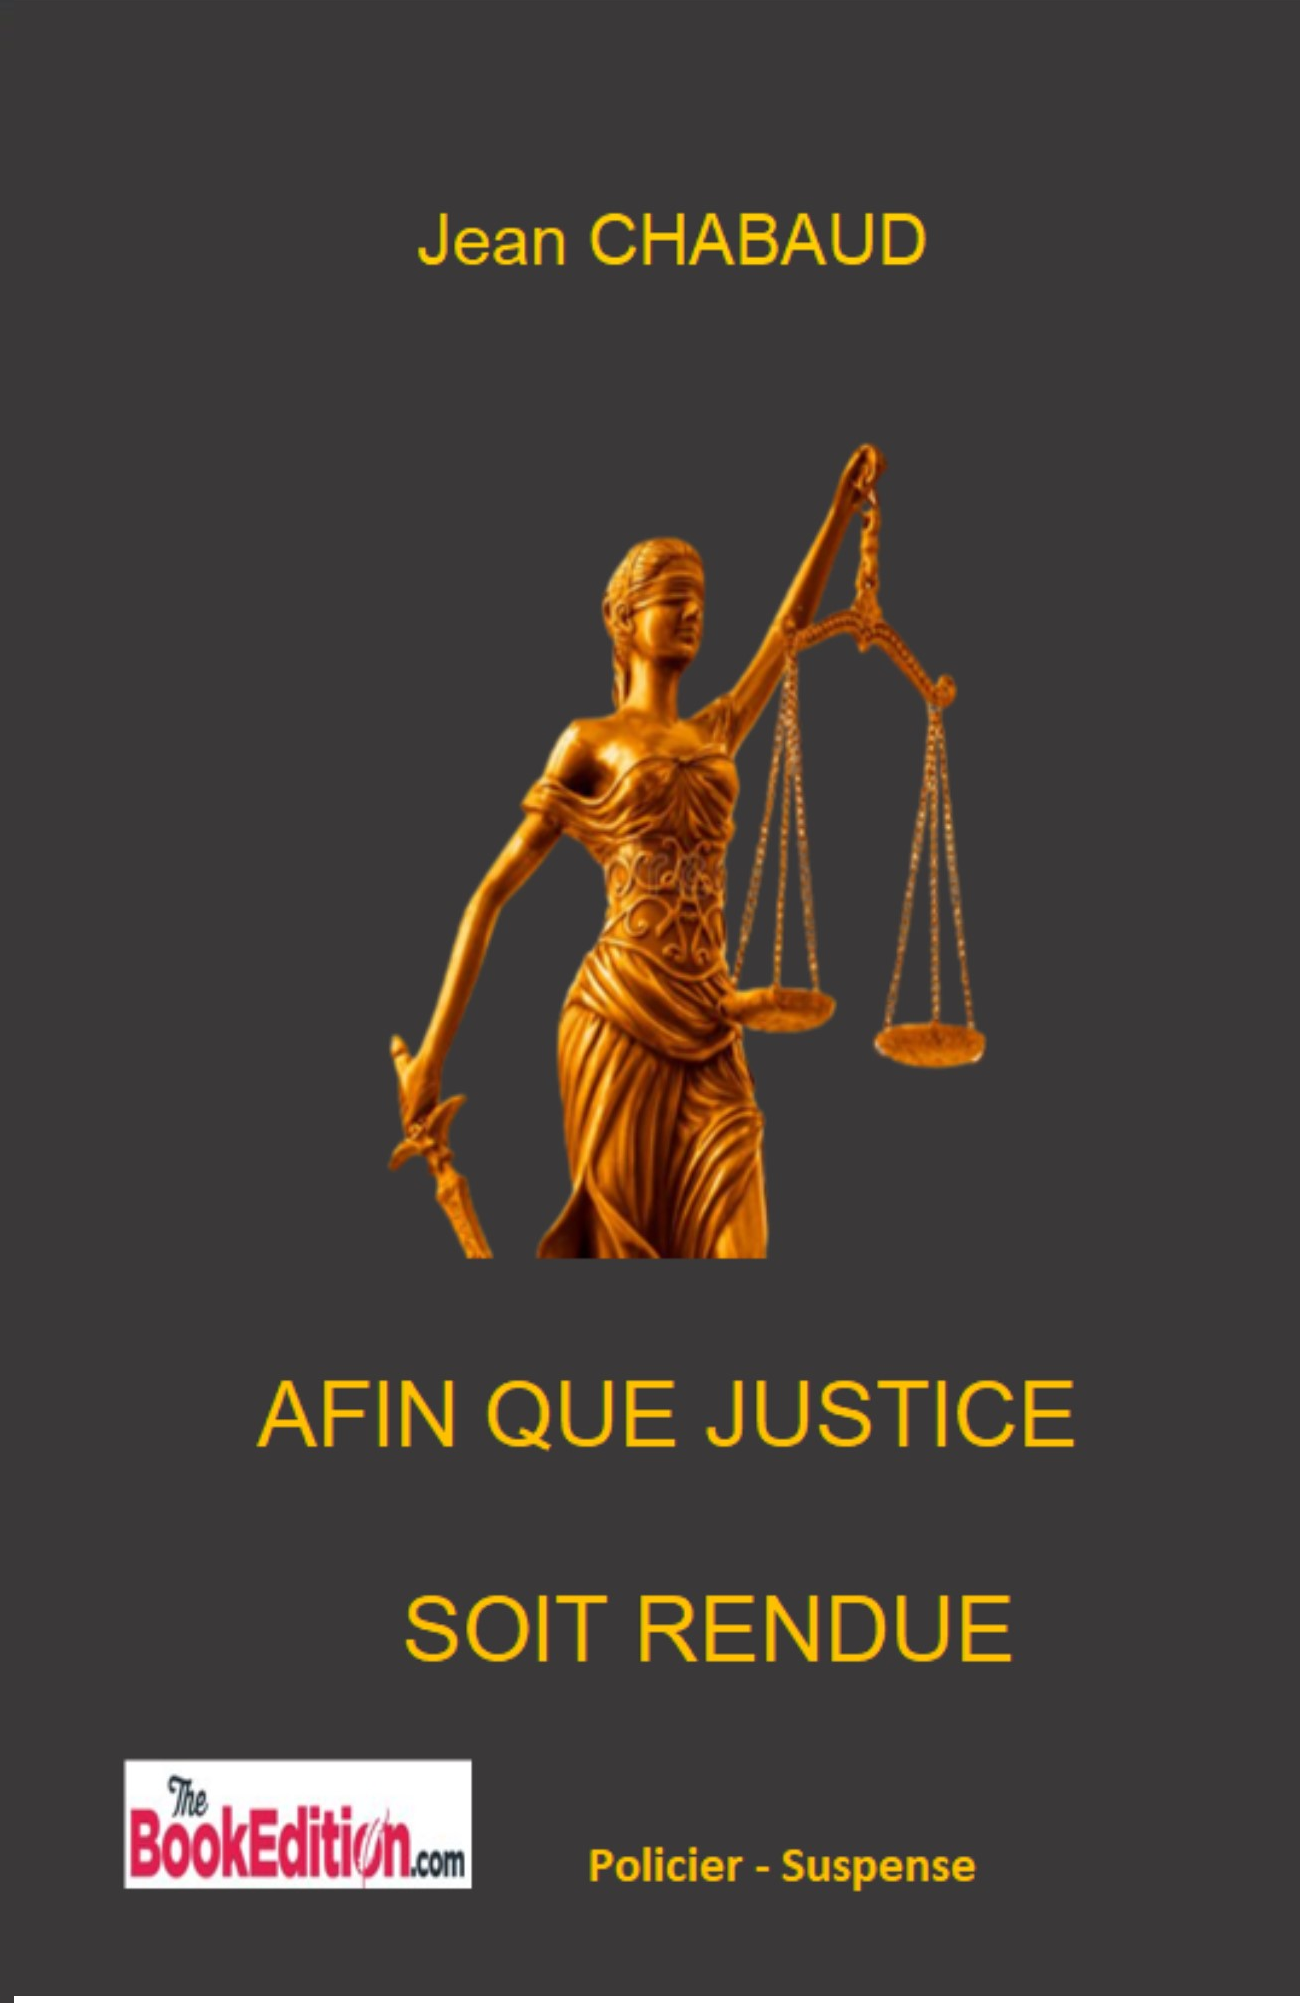 AFIN QUE JUSTICE SOIT RENDUE